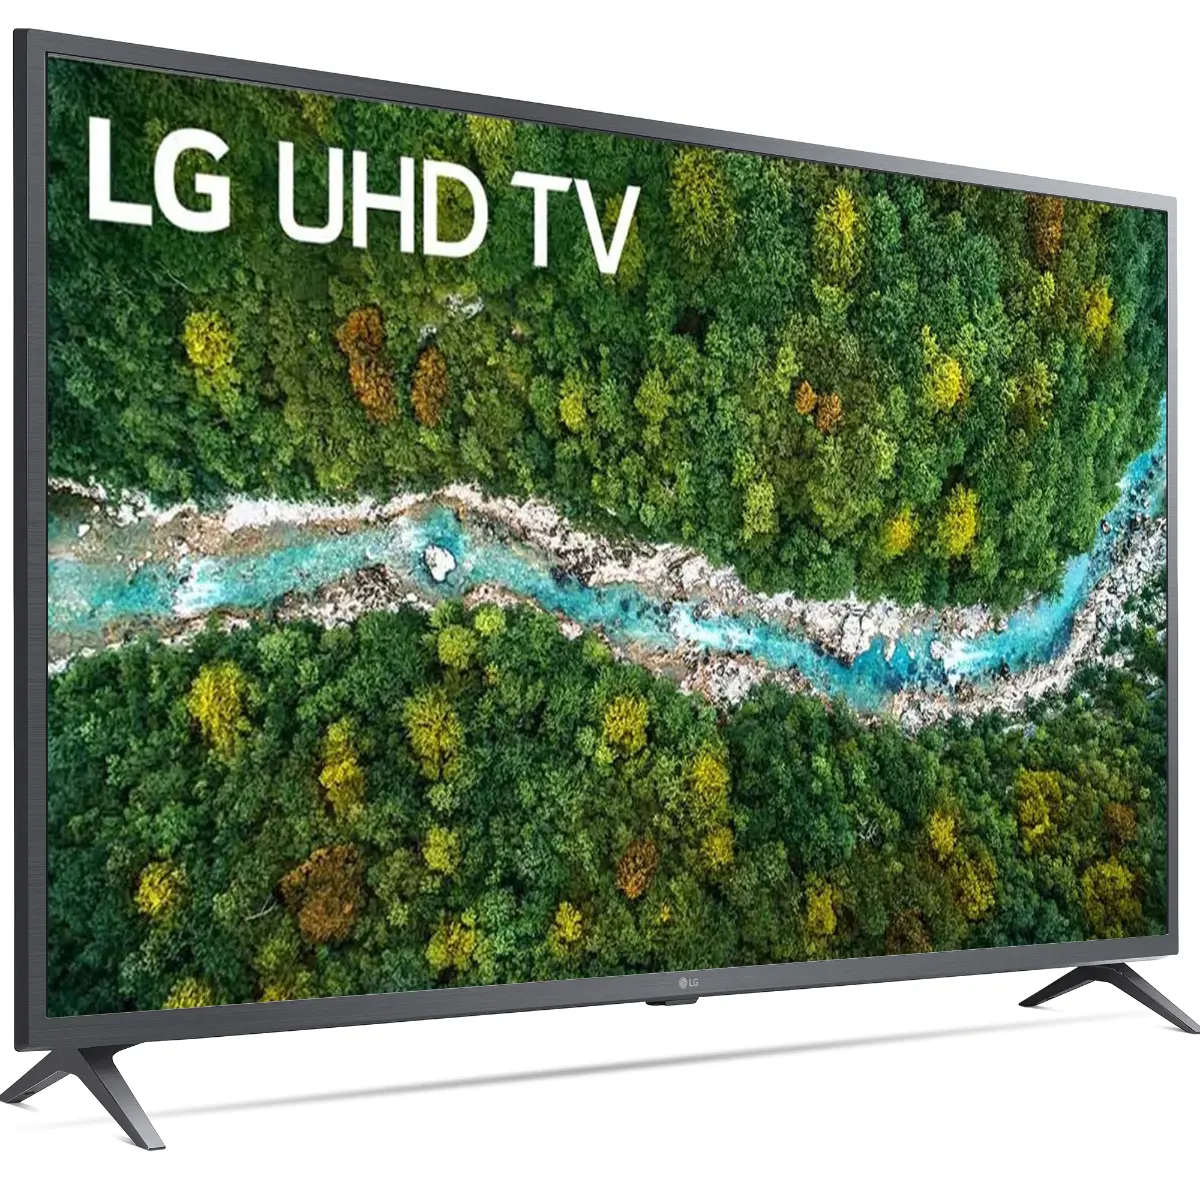 Televizor LED Smart LG 50UP76703LB, 126 cm, 4K Ultra HD, HDR, Clasa G